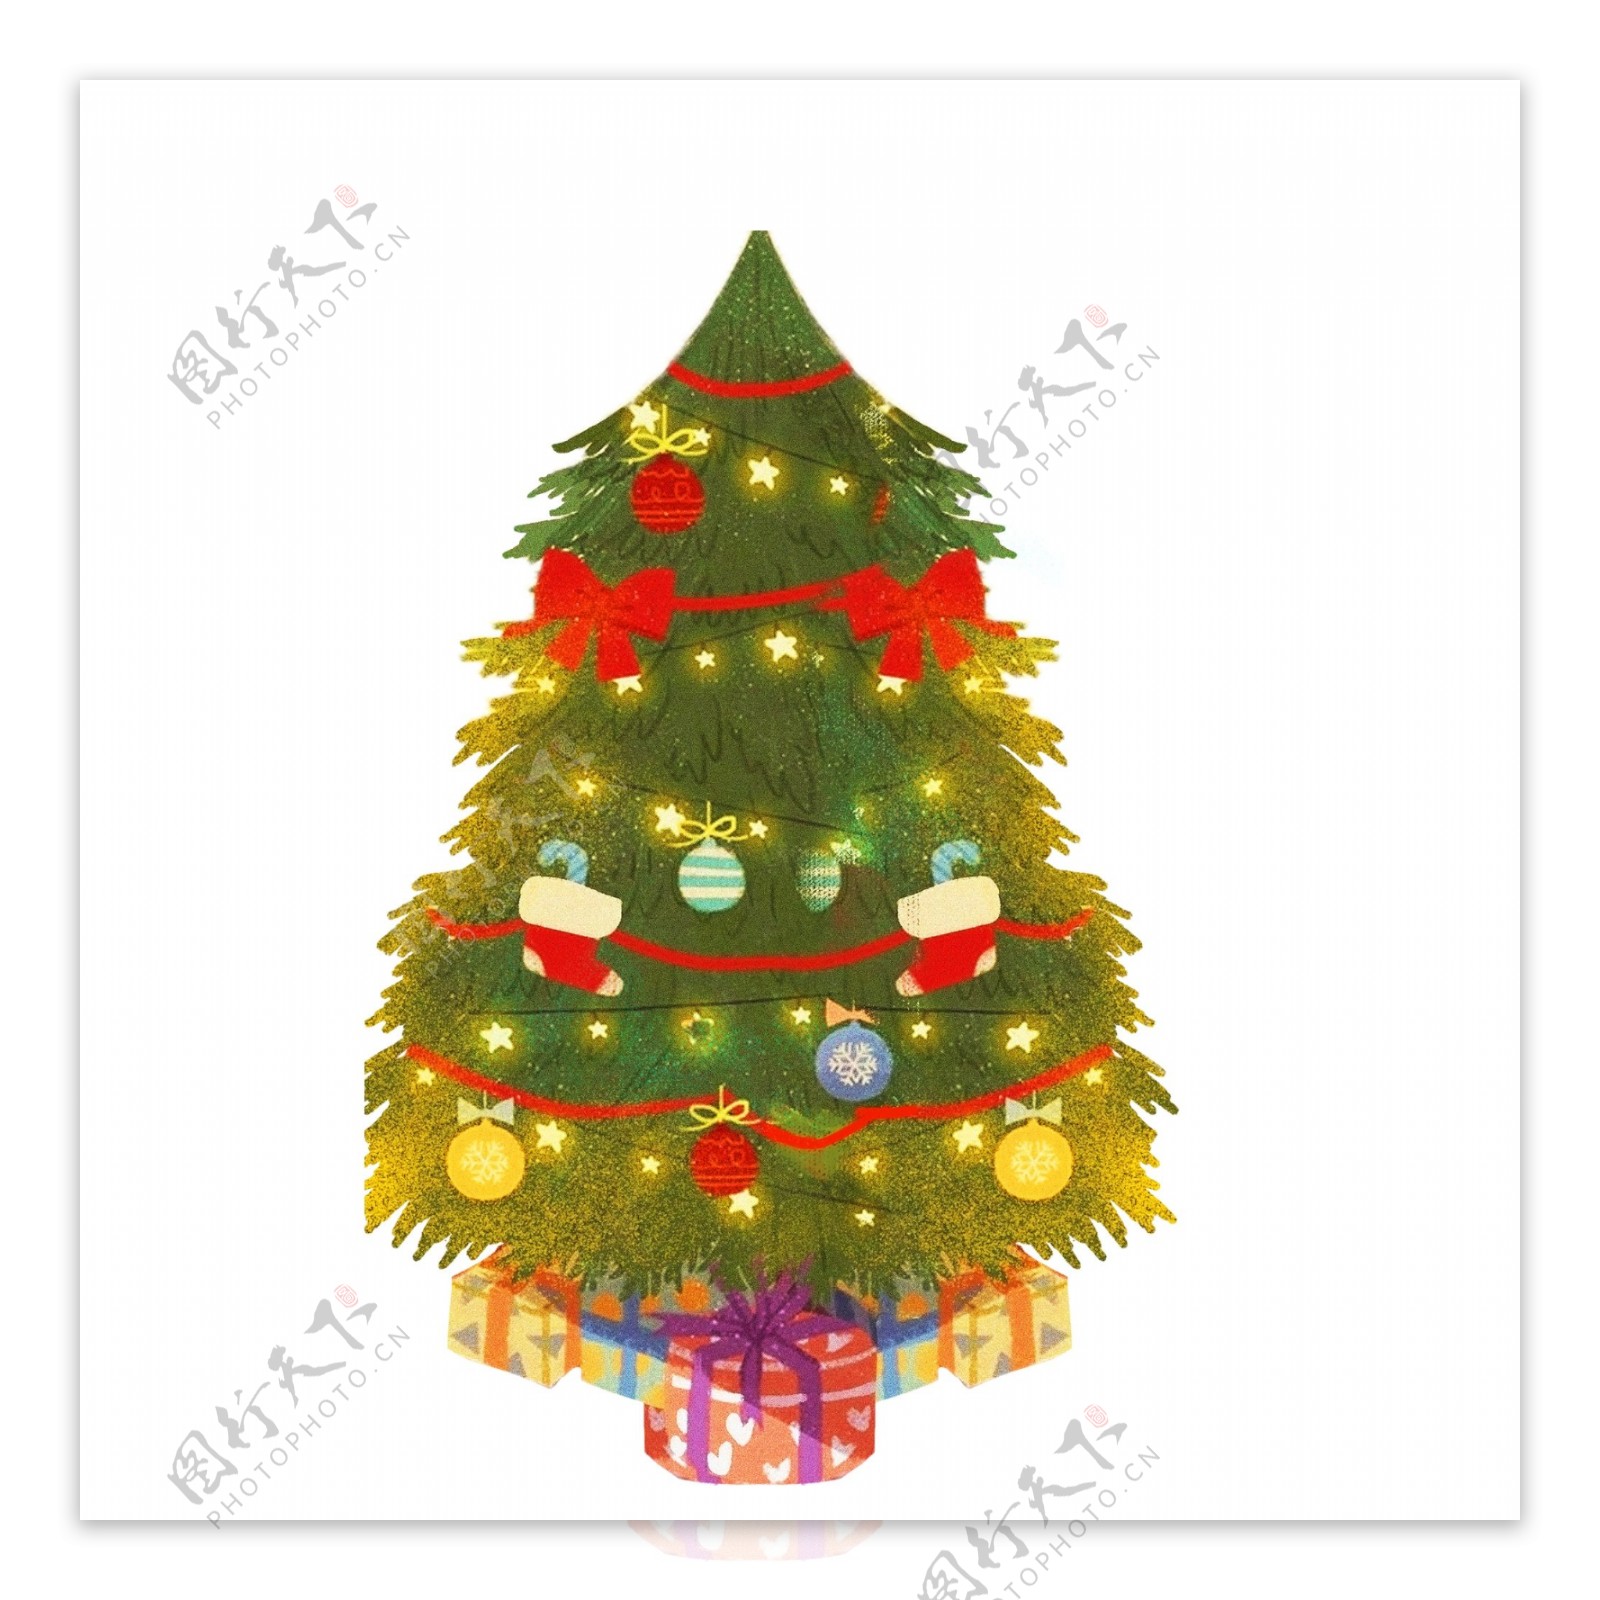 彩绘圣诞树装饰元素设计